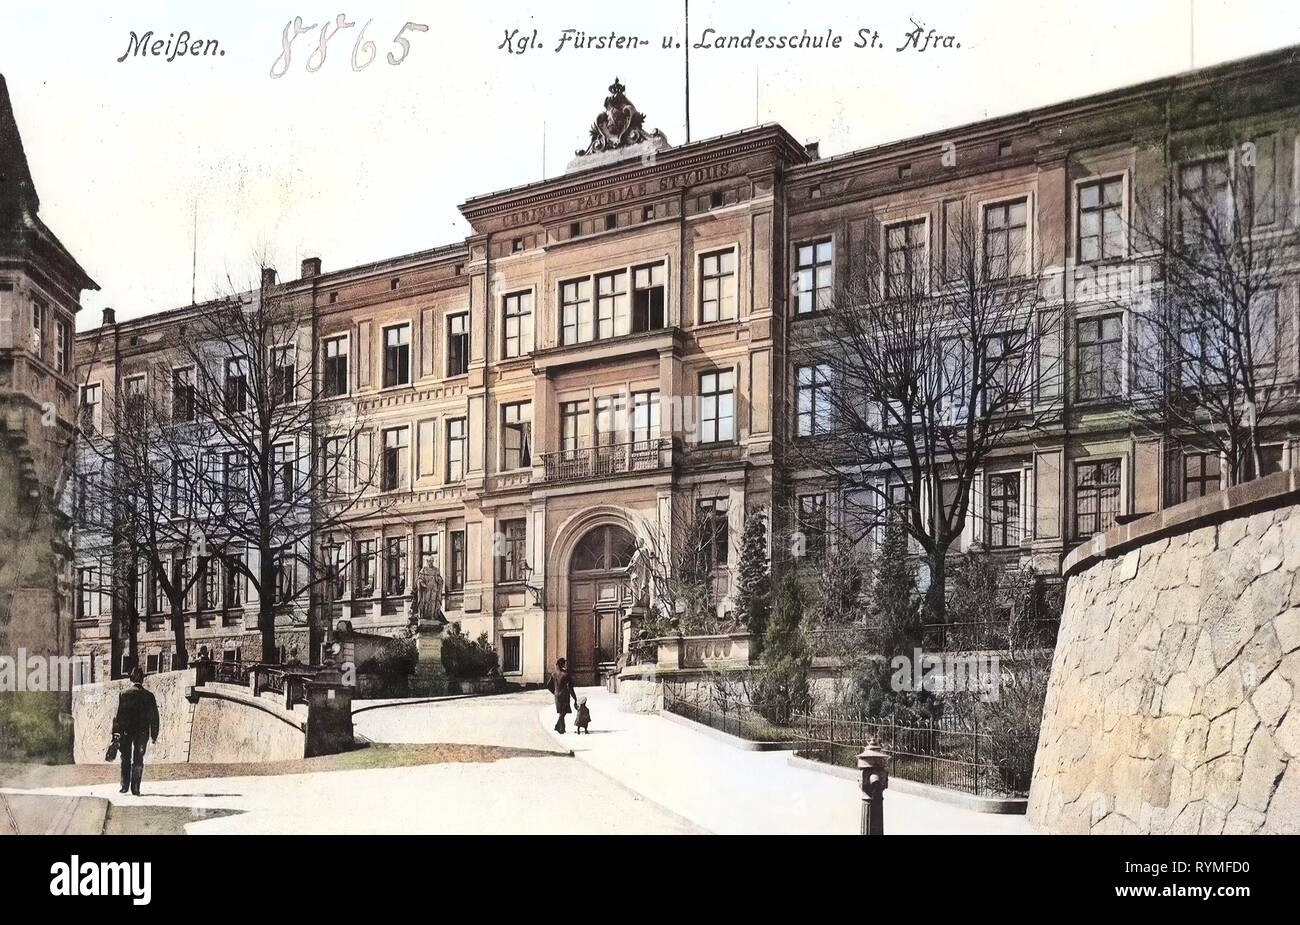 Sächsisches Landesgymnasium Sankt Afra, 1907, Meißen, Fürsten & Landesschule St. Afra, Germany Stock Photo